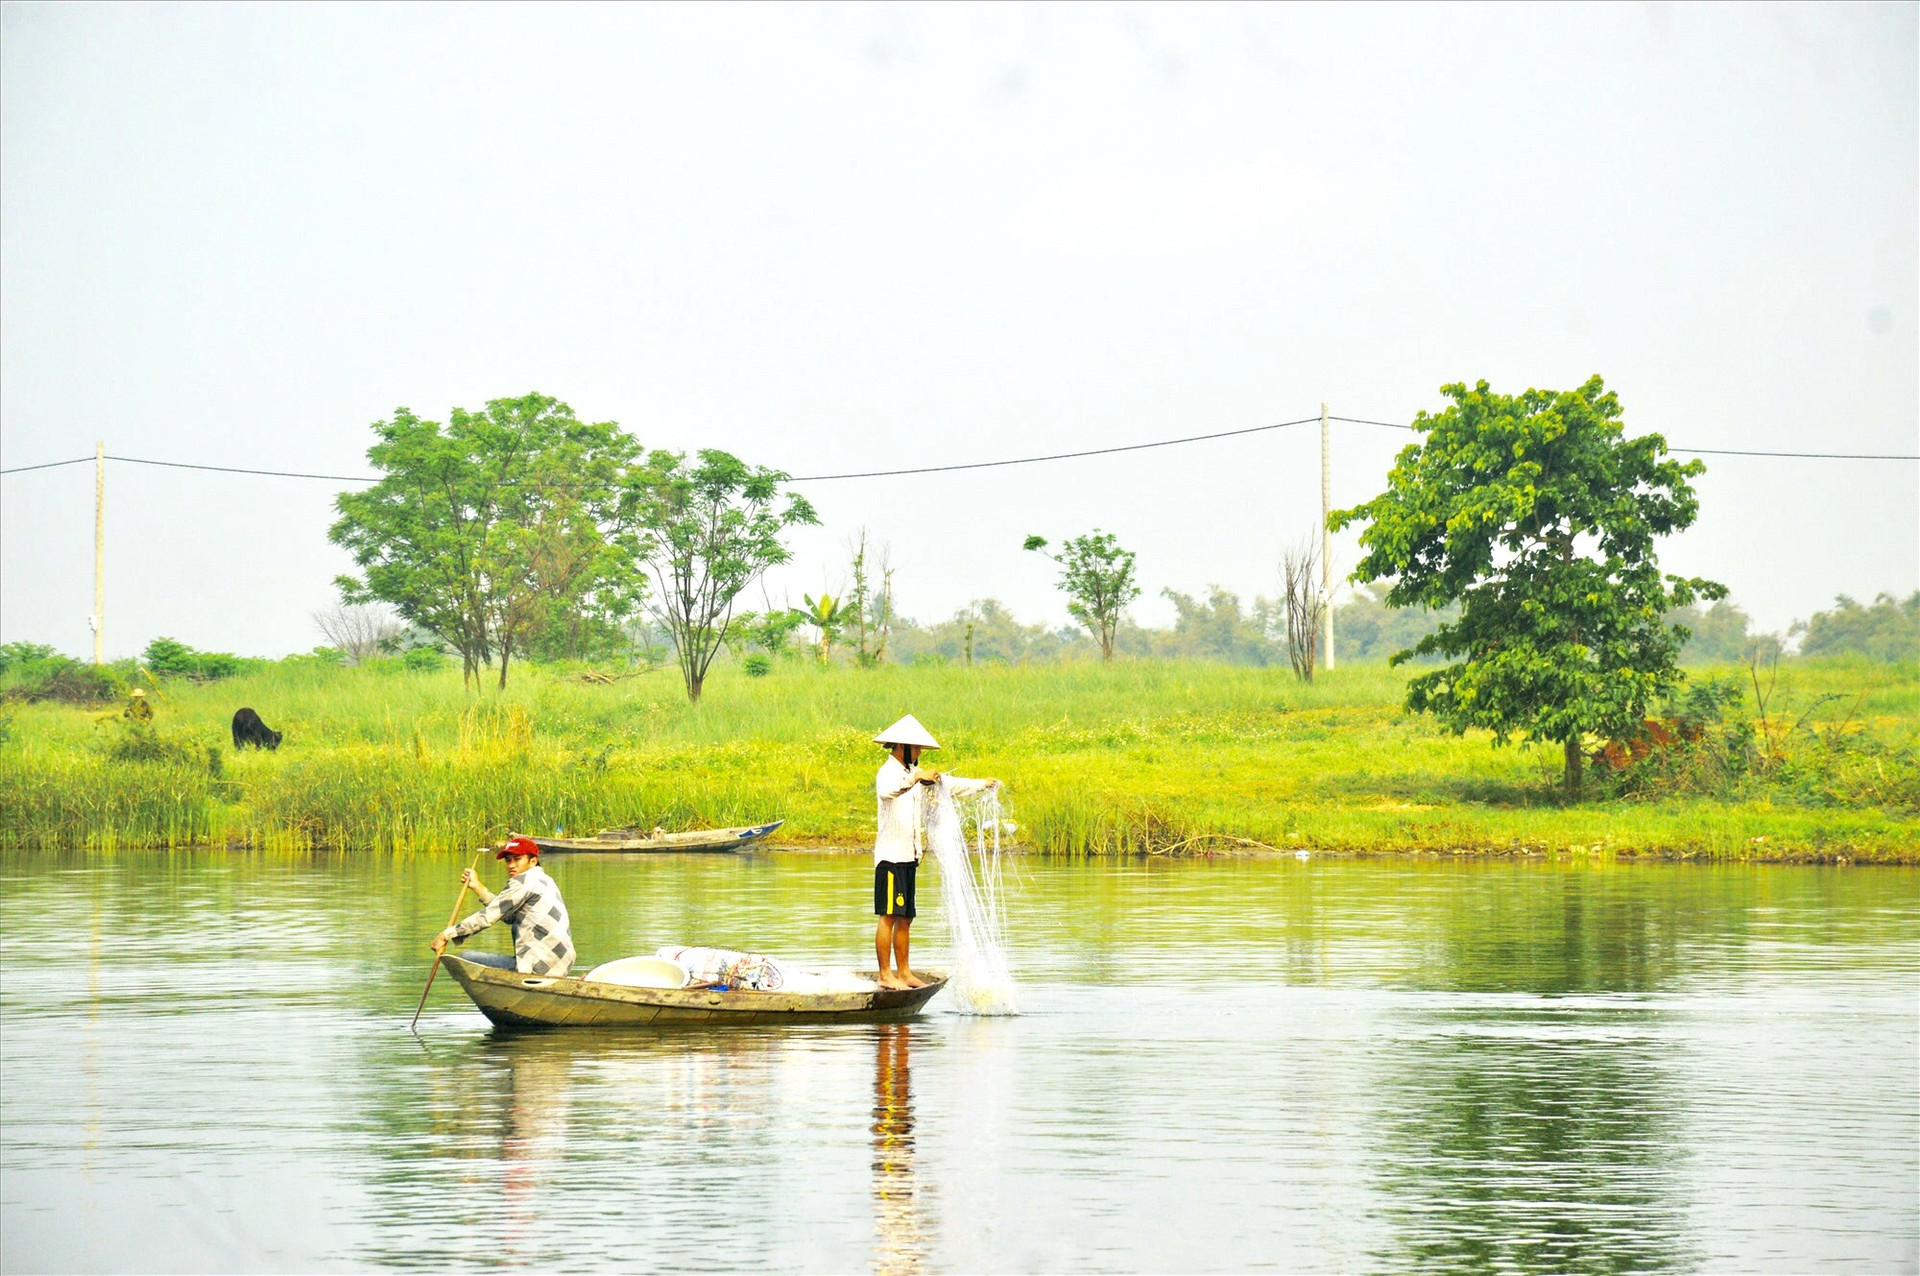 Vùng hạ lưu sông Thu Bồn sở hữu cảnh quan hữu tình, có nhiều tiềm năng phát triển du lịch. Ảnh: Q.T